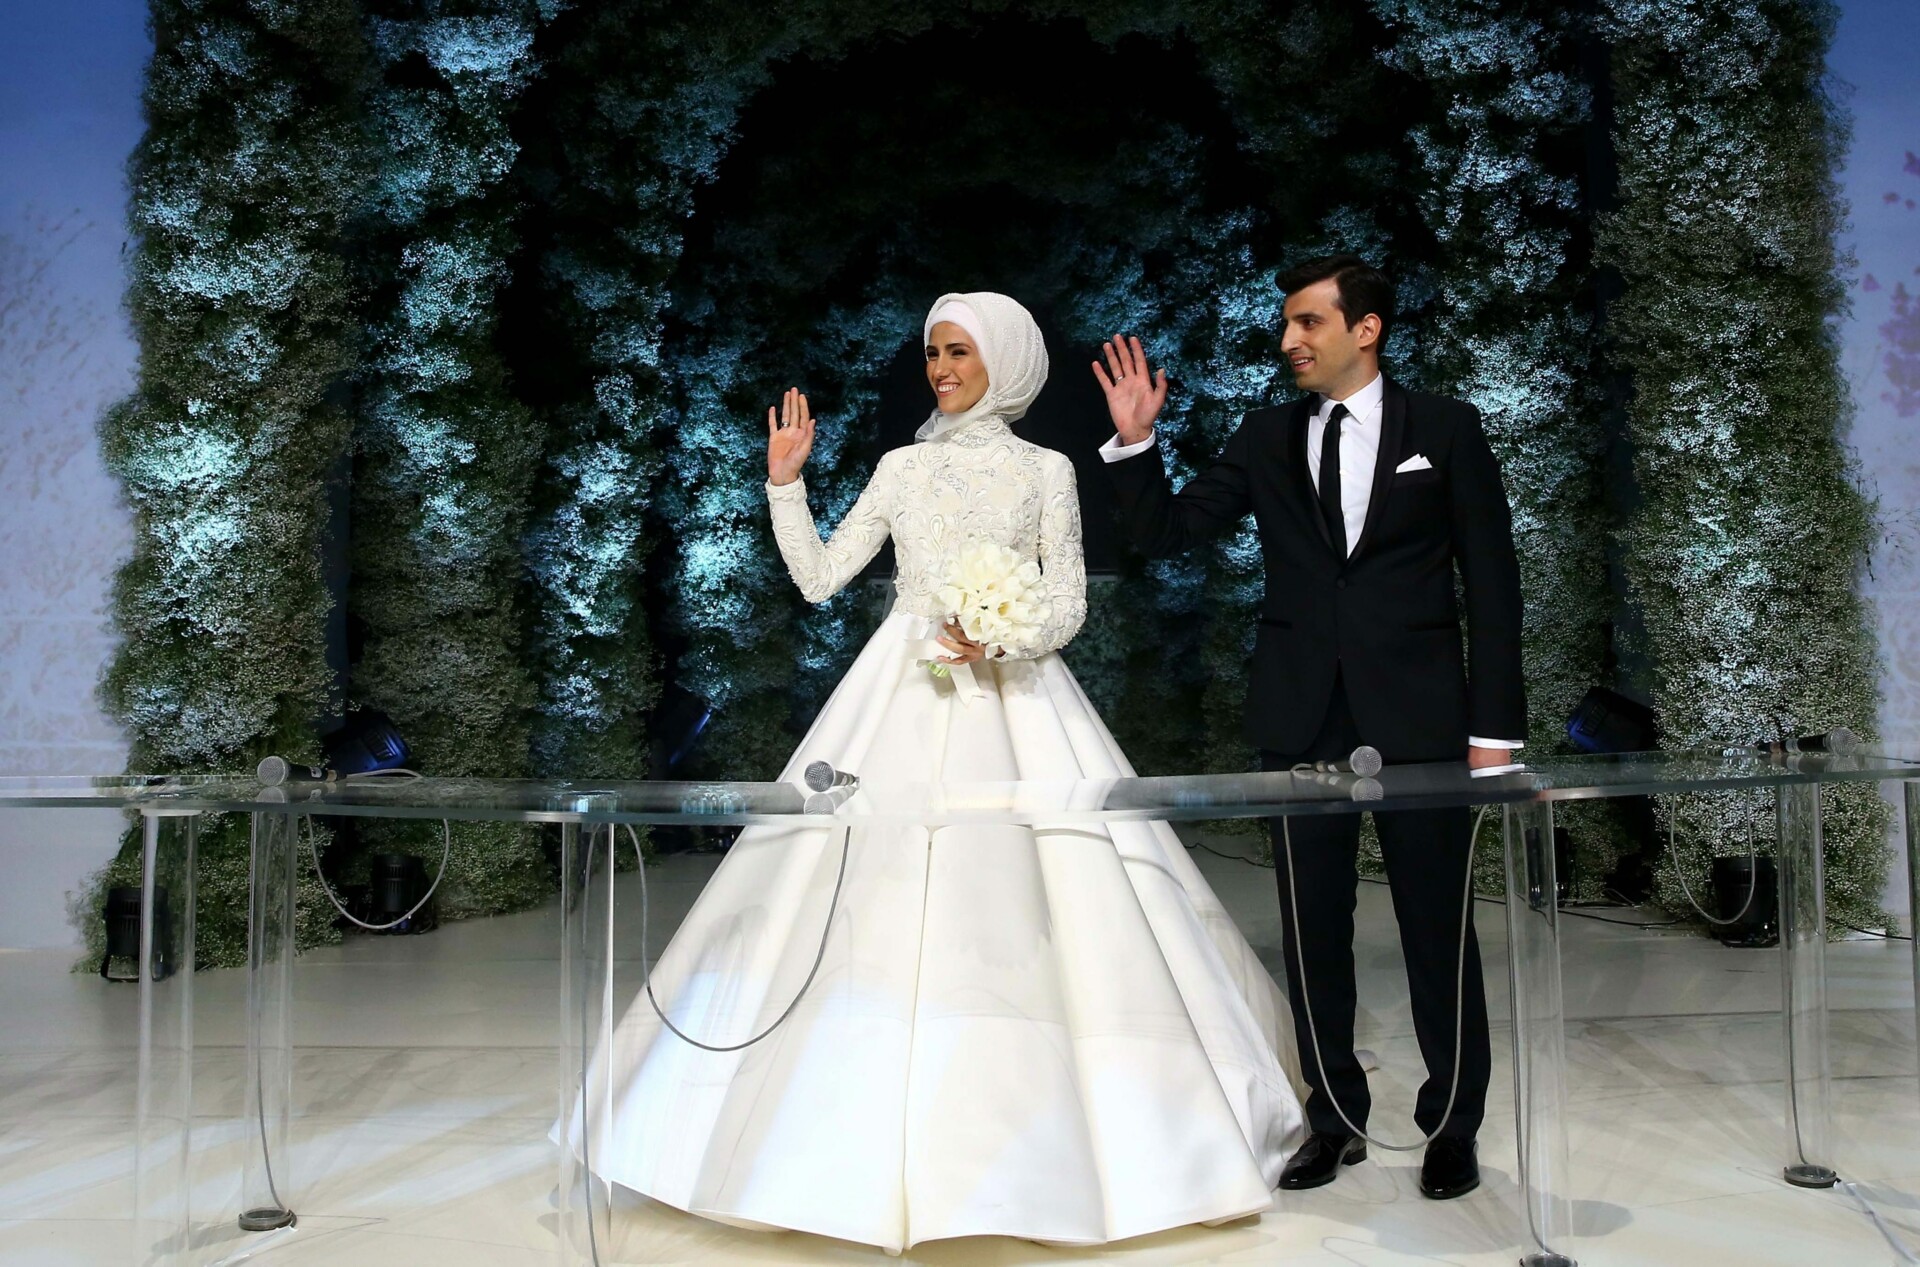 Στιγμιότυπο από τον γάμο του Σ. Μπαϊρακτάρ και της Σ. Ερντογάν © EPA/TURKISH PRESIDENT PRESS OFFICE